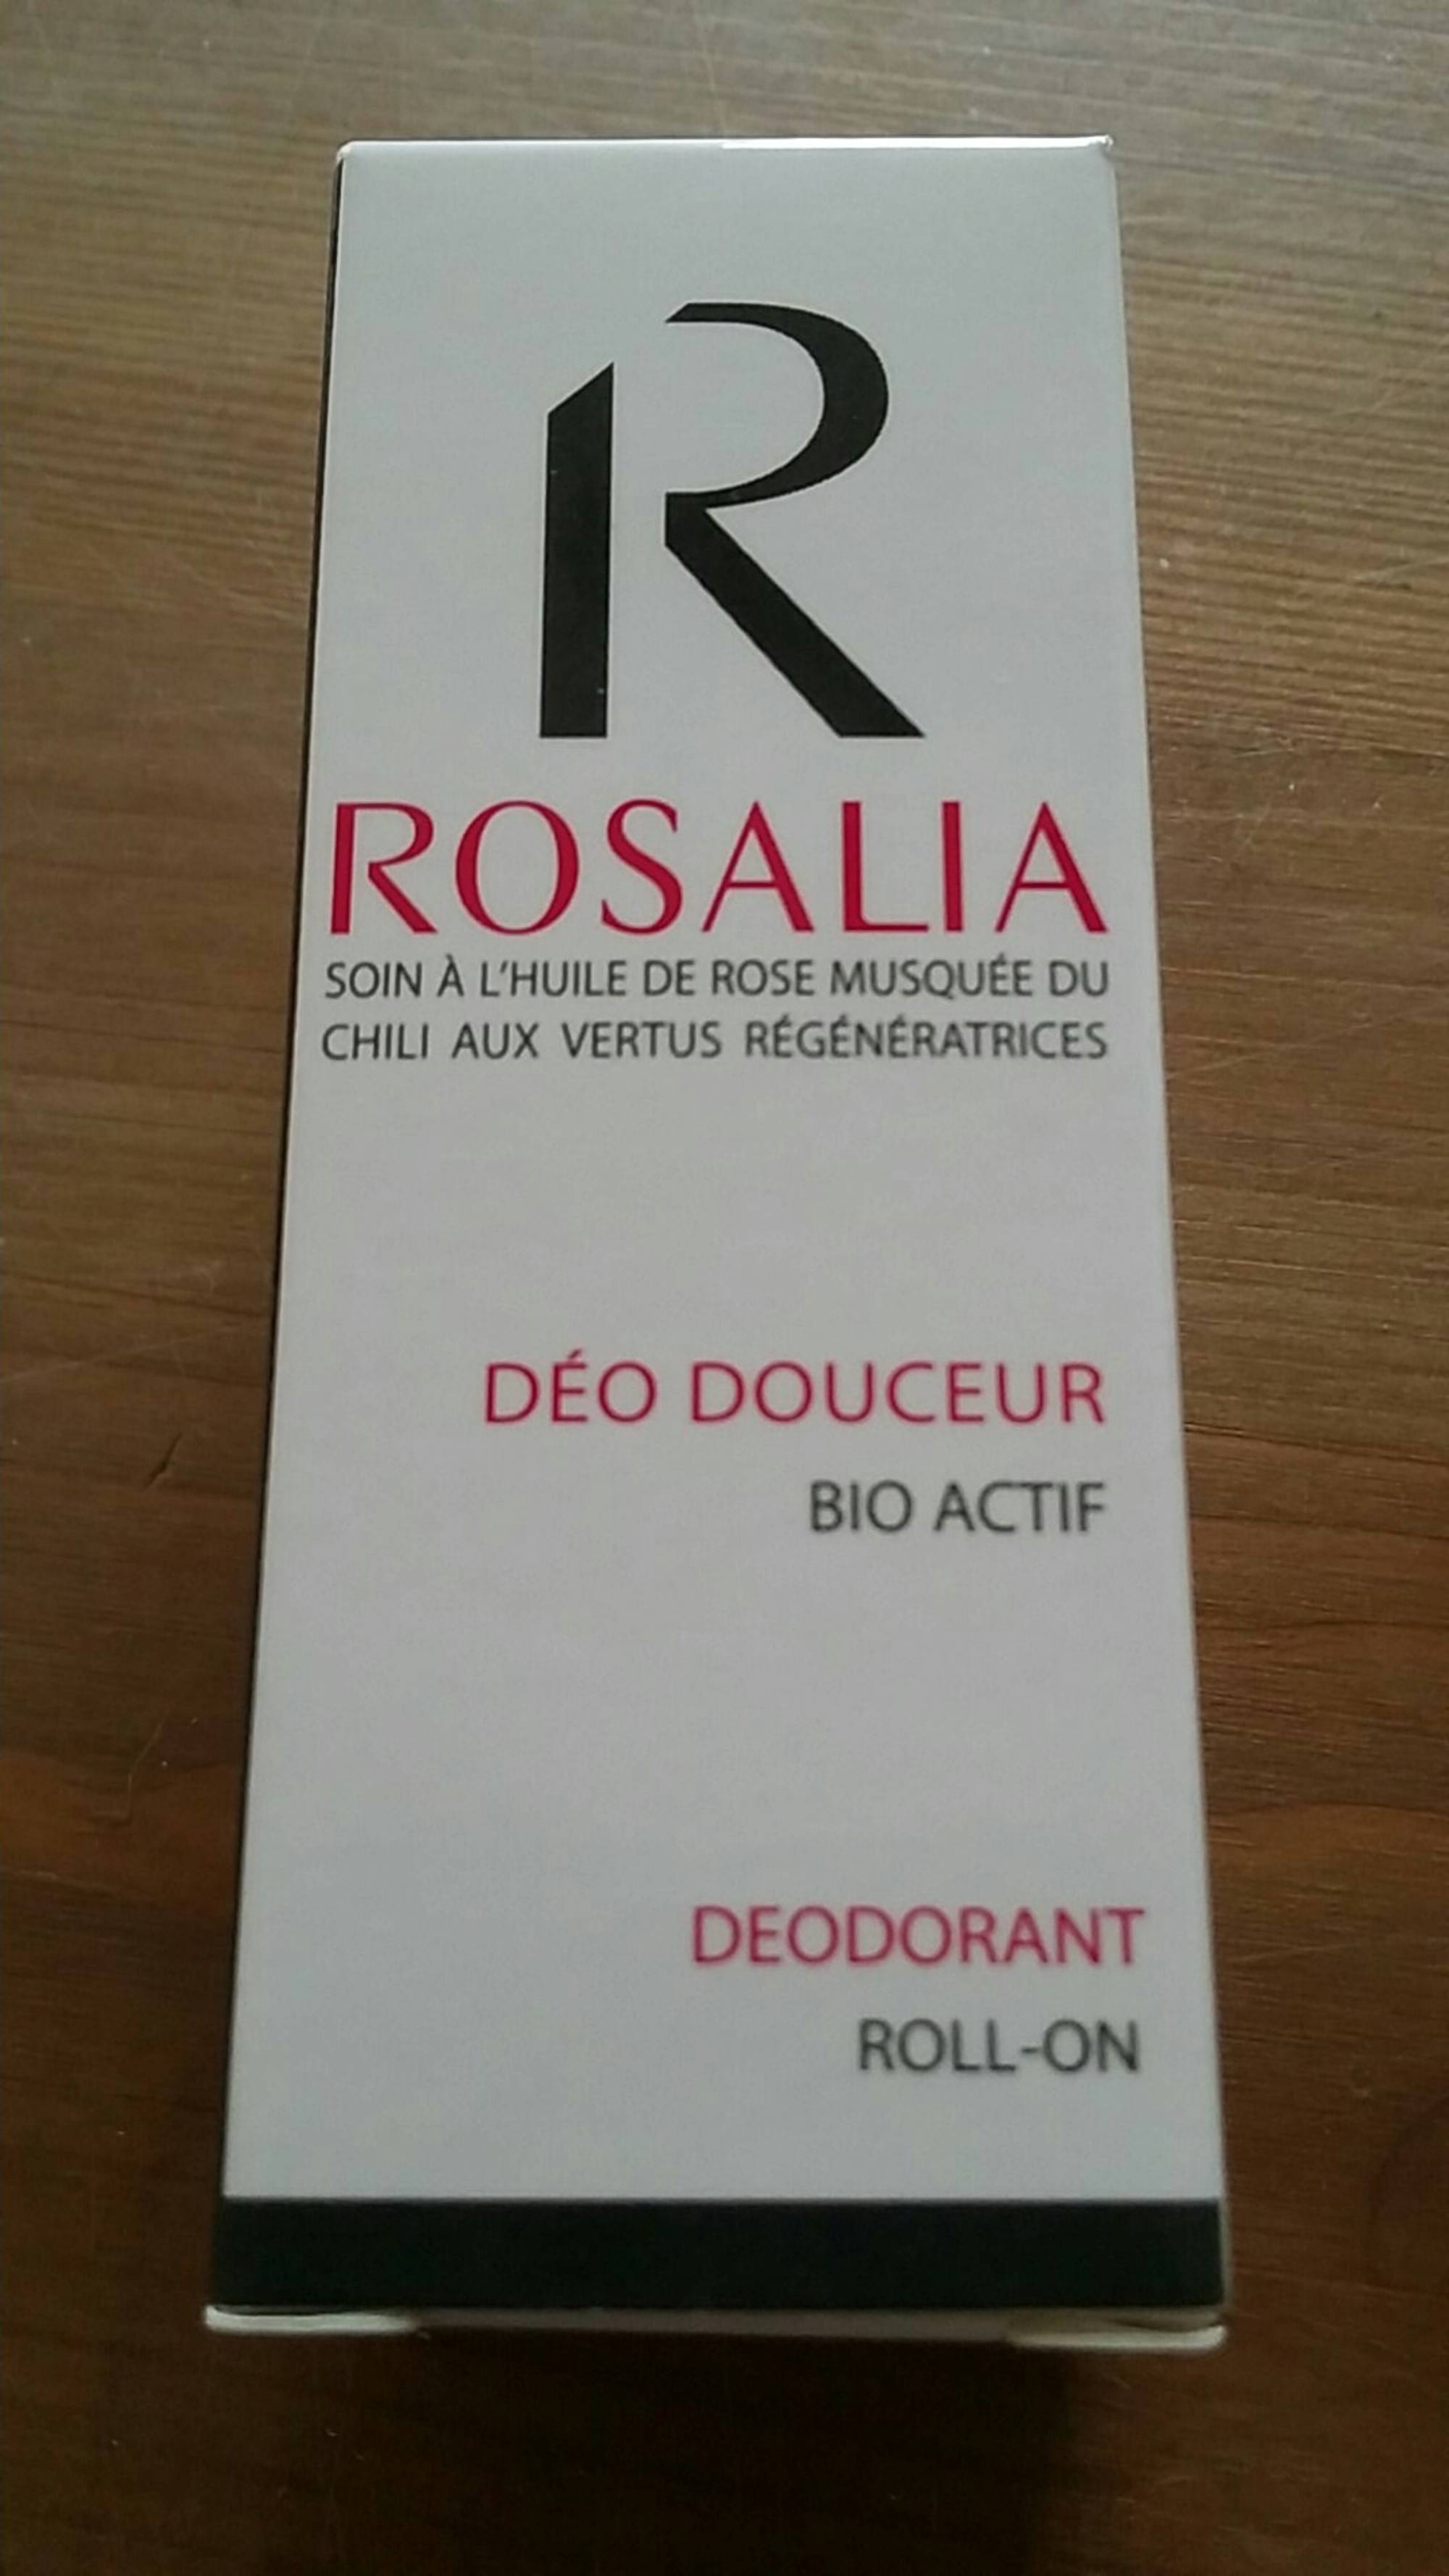 ROSALIA - Déo douceur bio actif - Déodorant roll-on